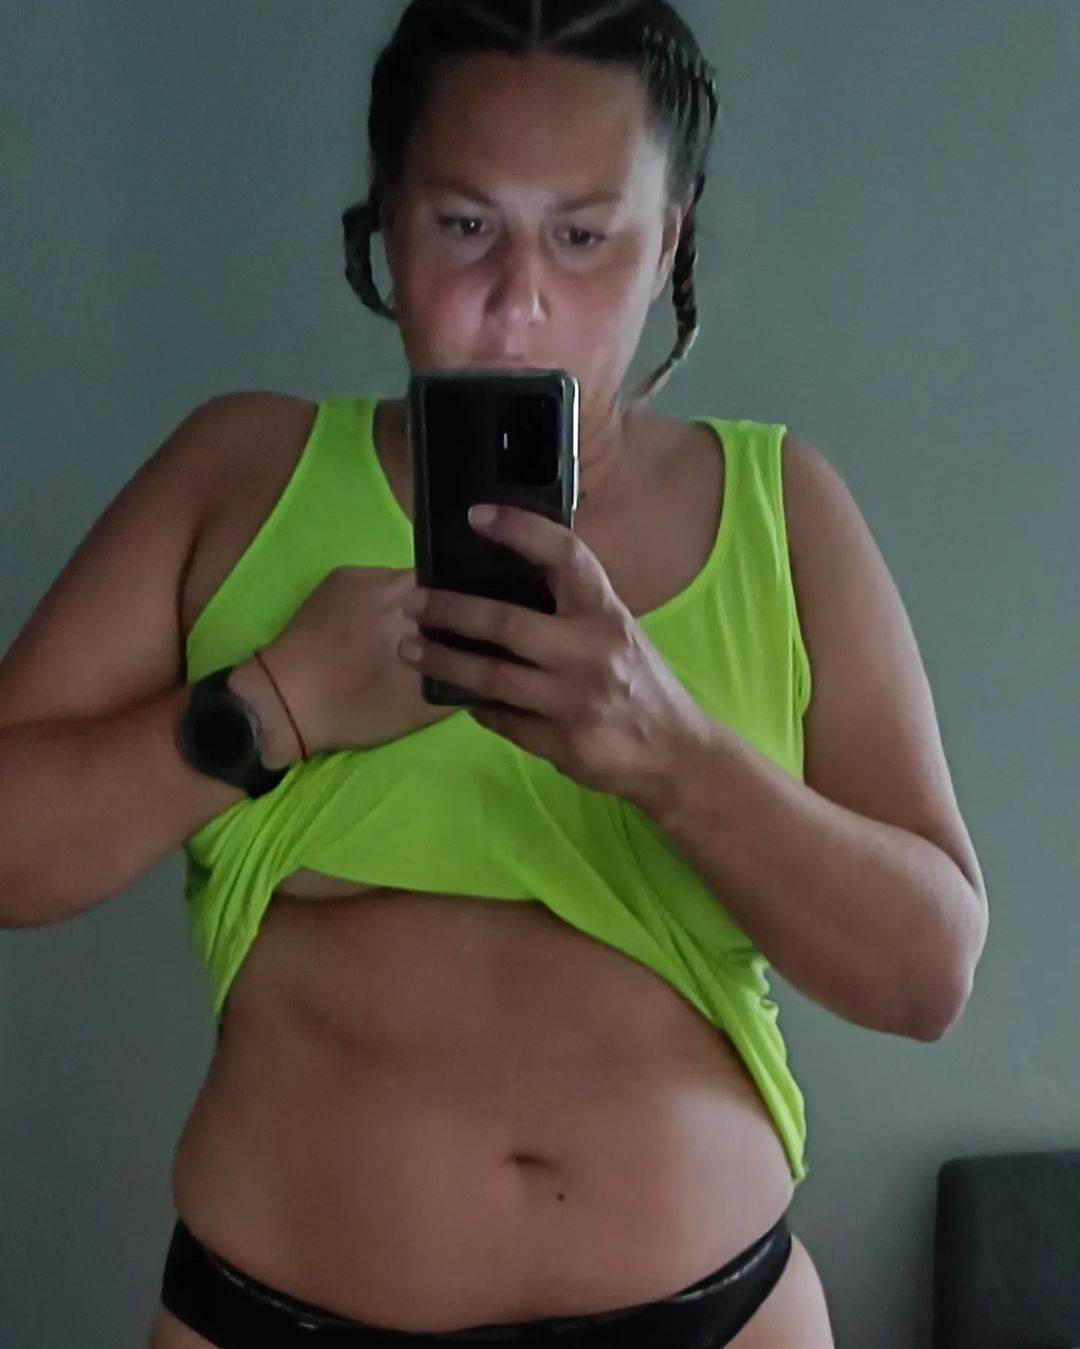 Marica iz 'Života na vagi': Često me pitate koliko imam kila. Evo, slika govori više od tisuću riječi